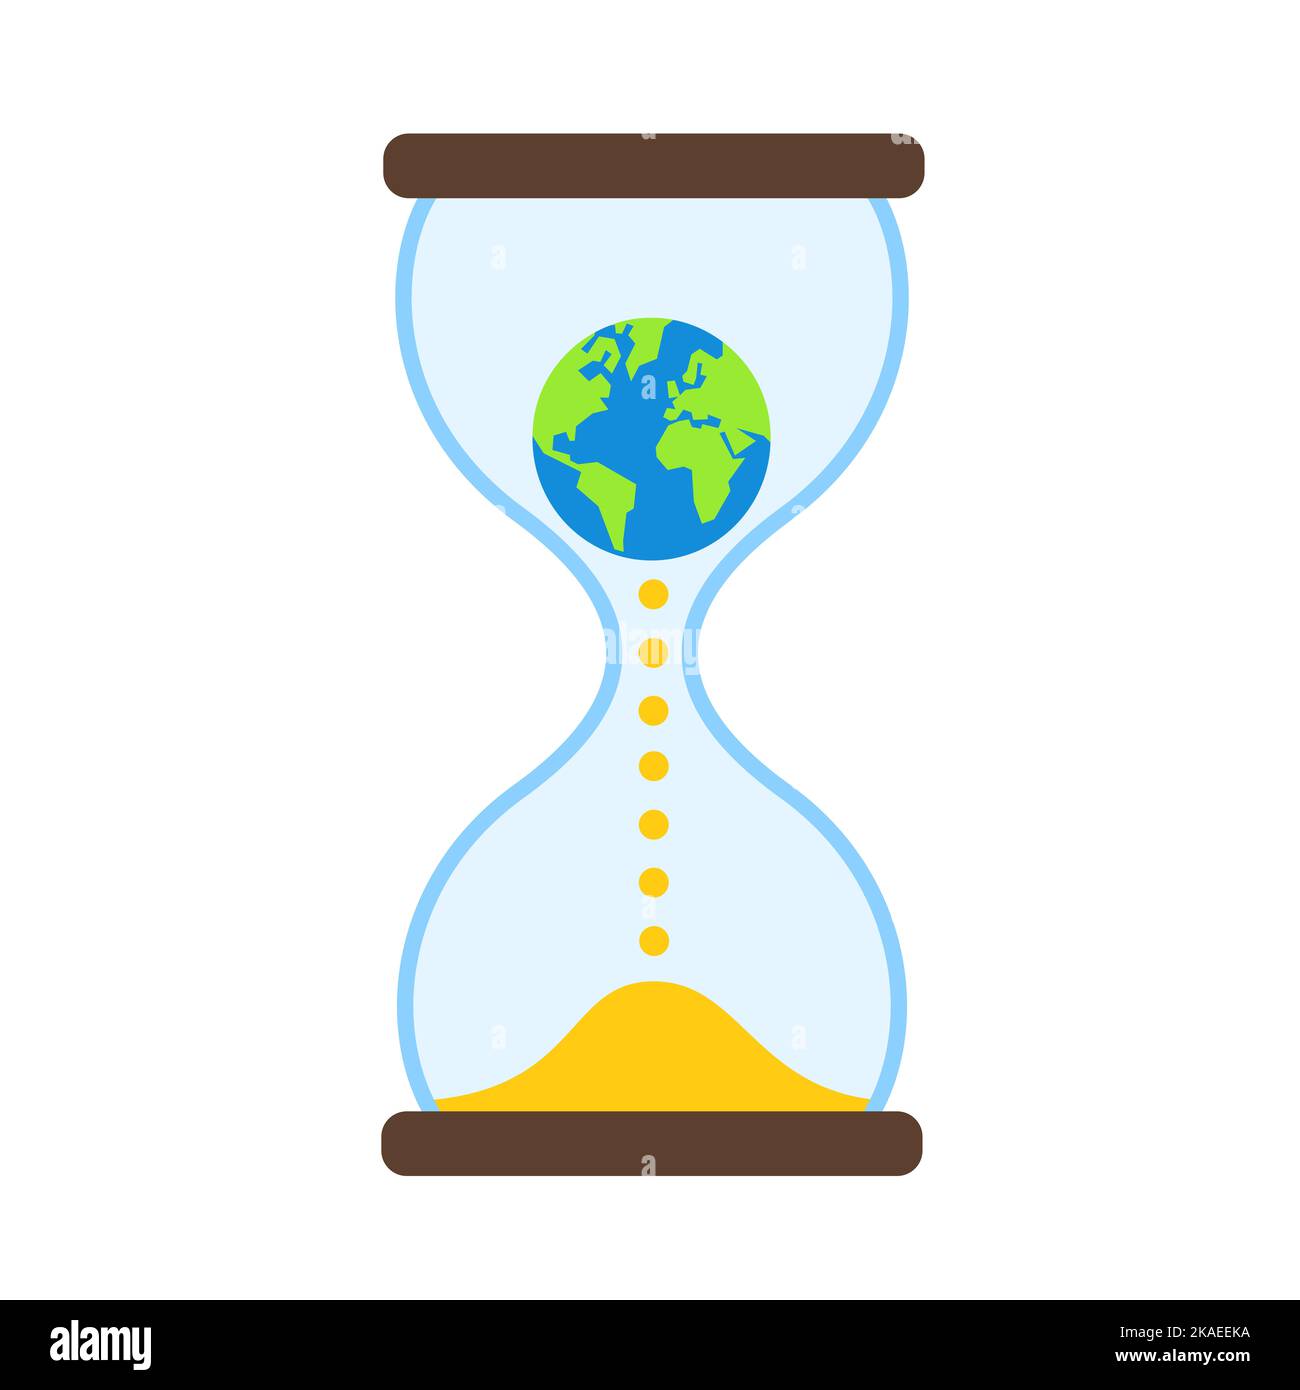 Cambio climático, calentamiento global y tiempo restante - El planeta Tierra está dentro de un reloj de arena y un reloj de arena. Metáfora del problema y los problemas ambientales. Ve Foto de stock